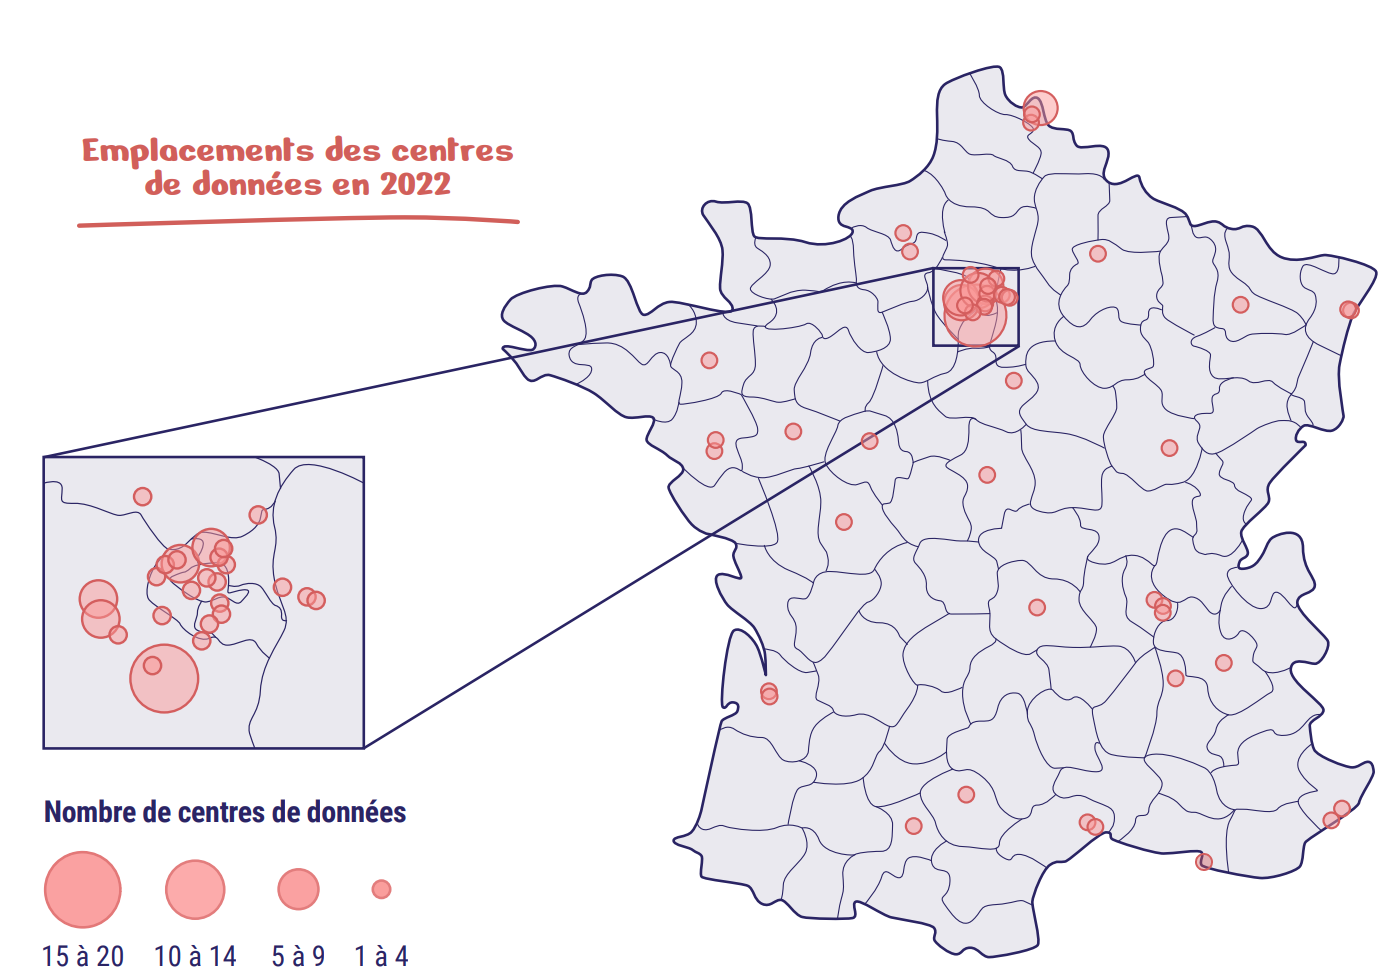 Infographie représentant les emplacements des centres de données en 2022